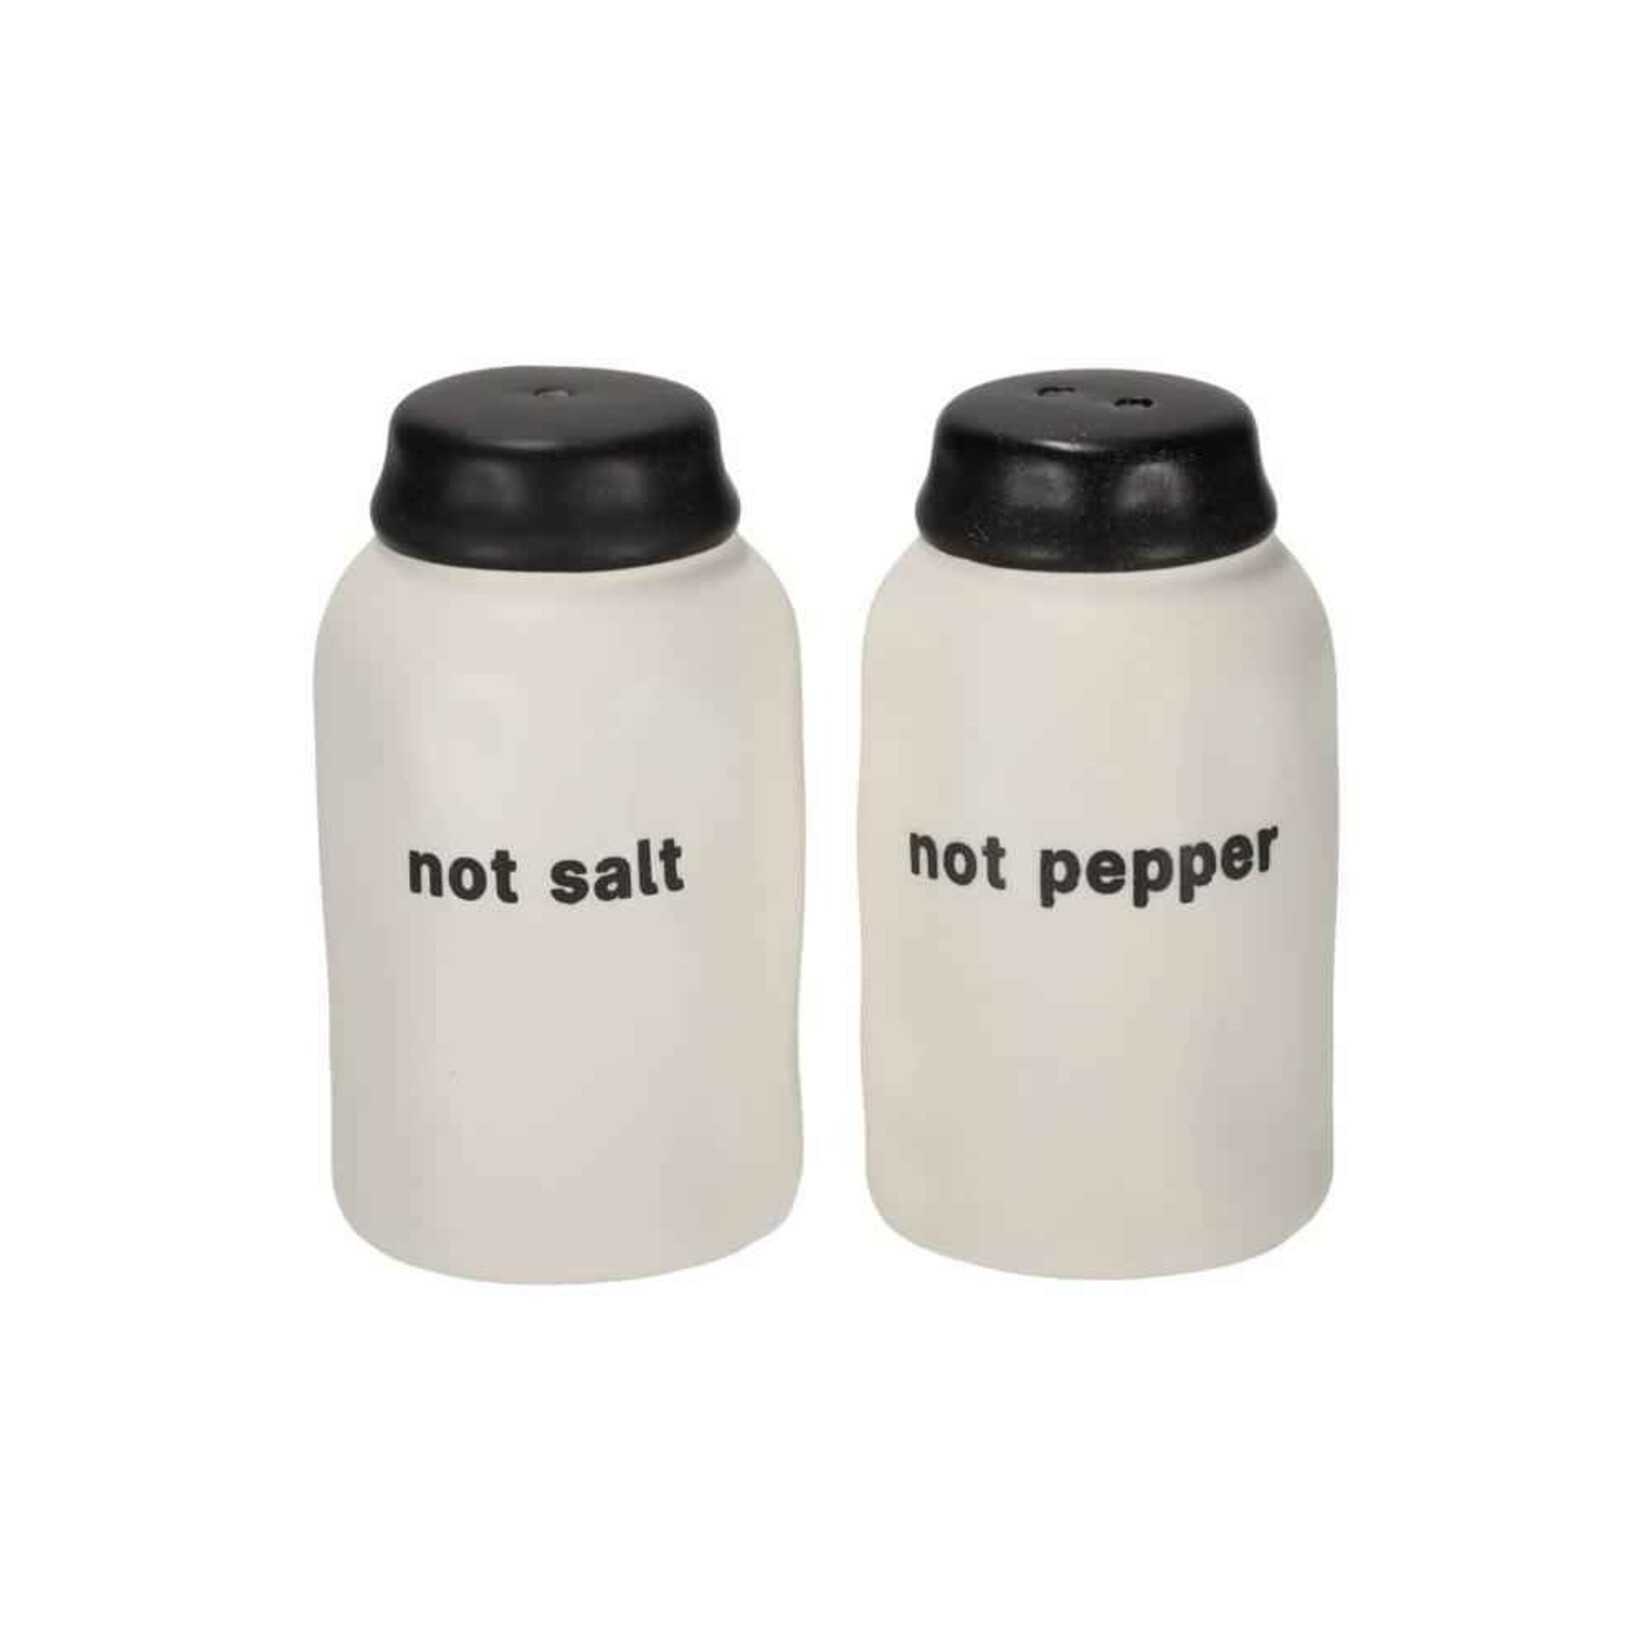 Jens Living Peper & Zout set - Not pepper Not Salt - Keramiek - Wit